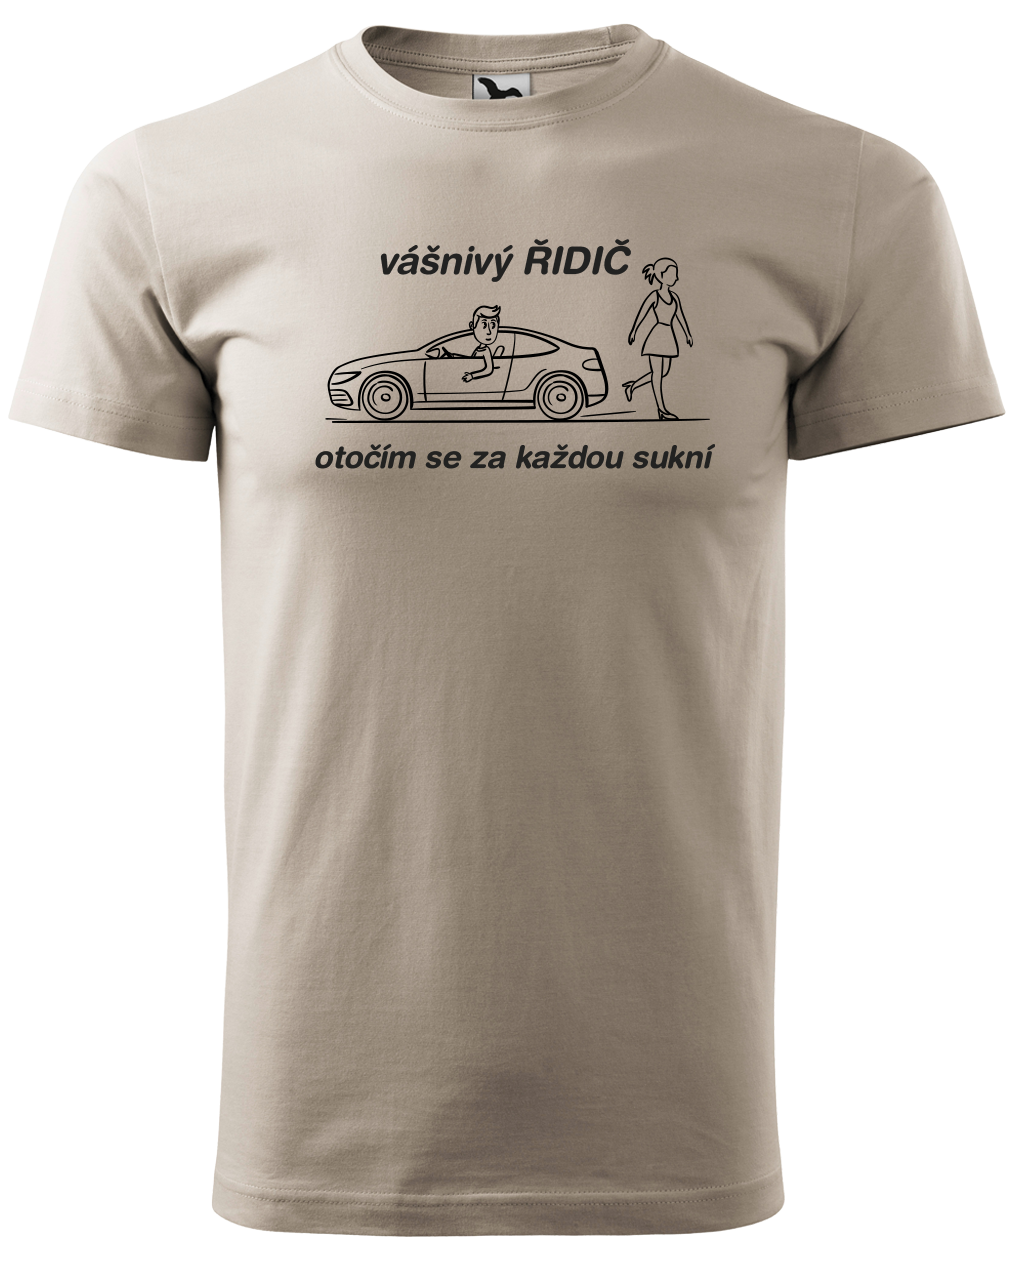 Vtipné tričko pro řidiče - Vášnivý řidič Velikost: XL, Barva: Ledově šedá (51)